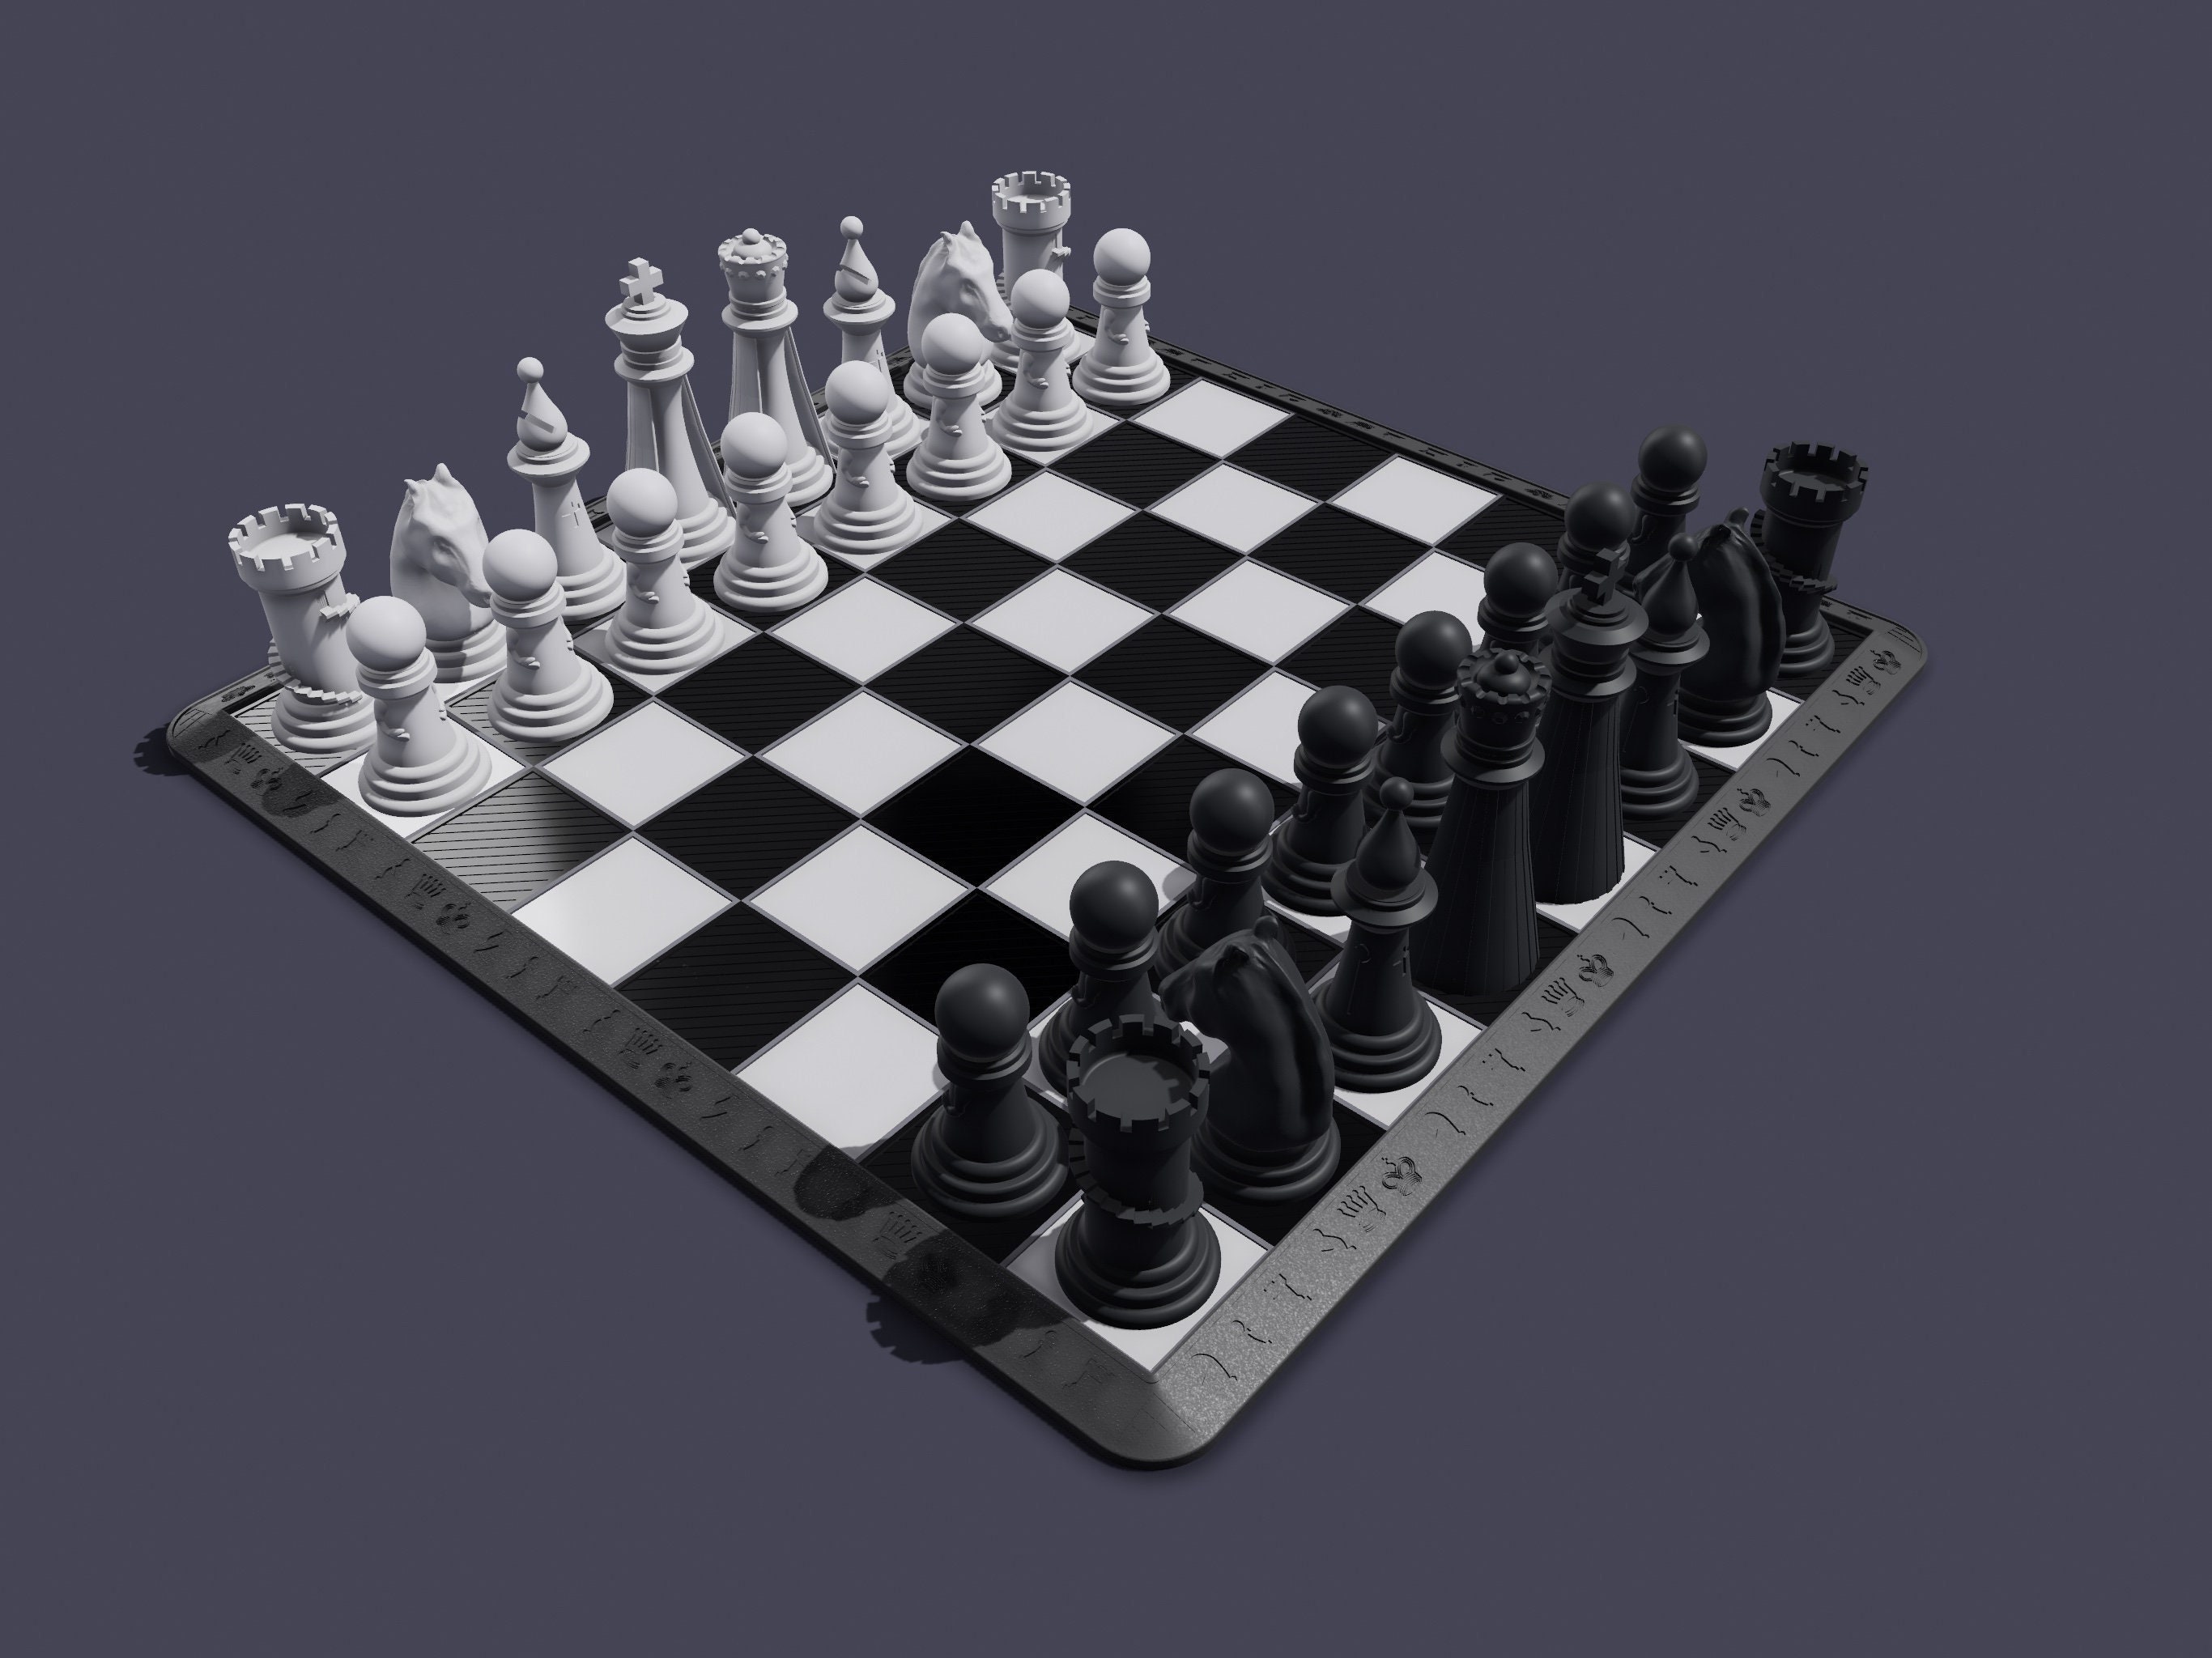 Conjunto de PEÇAS de XADREZ TABULEIRO de xadrez modular 